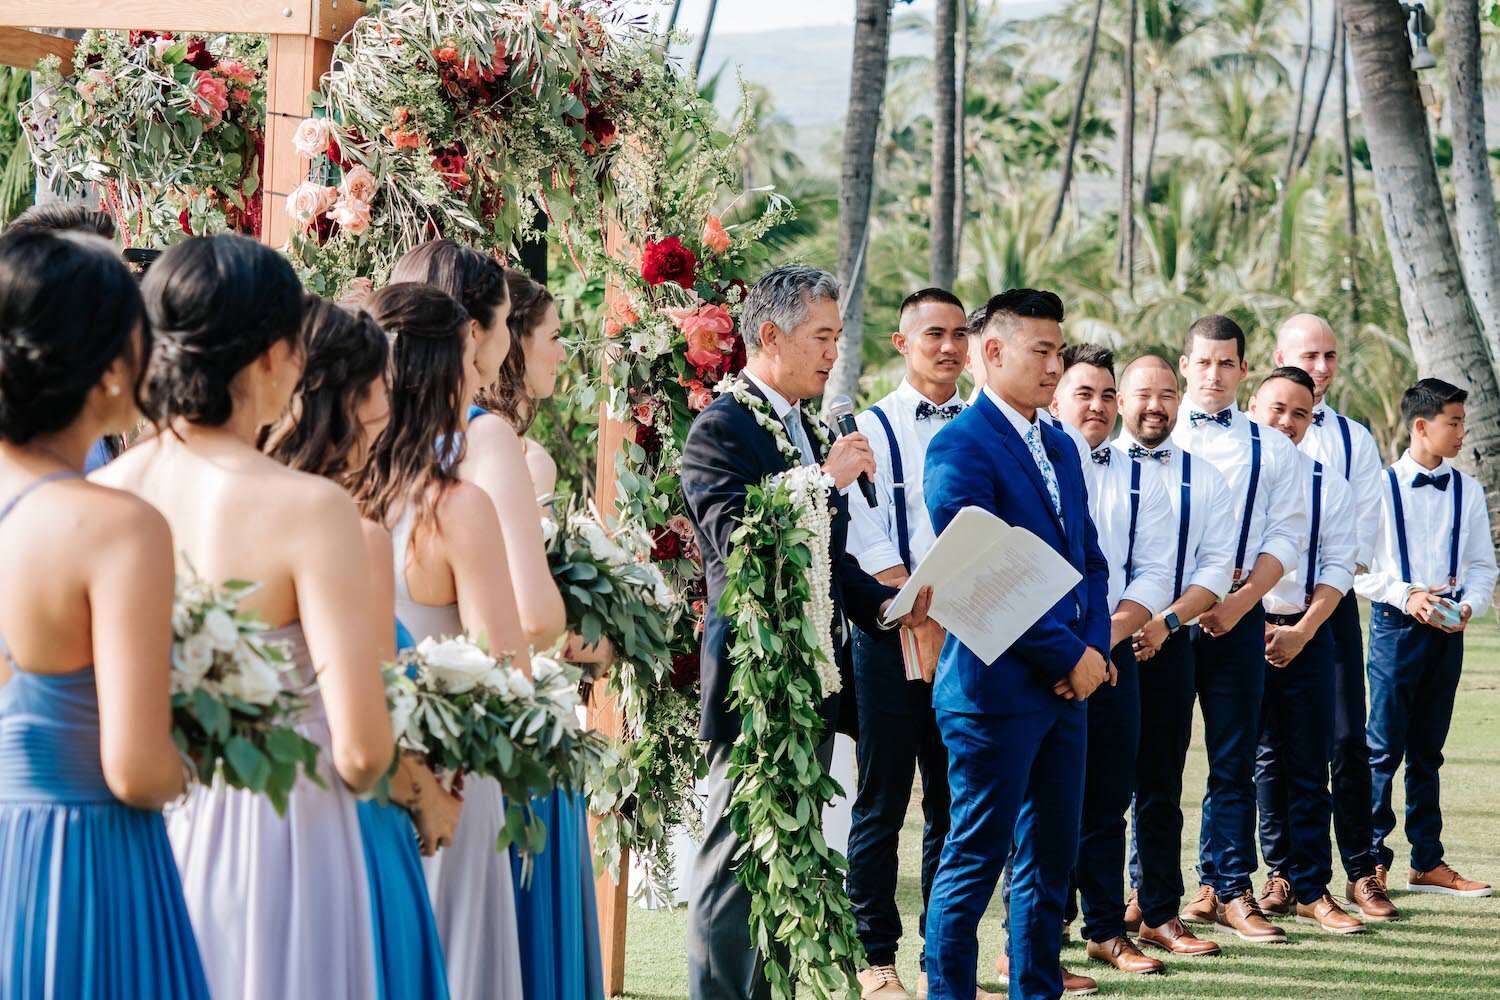 Lanikuhonua P2 Wedding Venue on Oahu Honolulu Hawaii.jpg